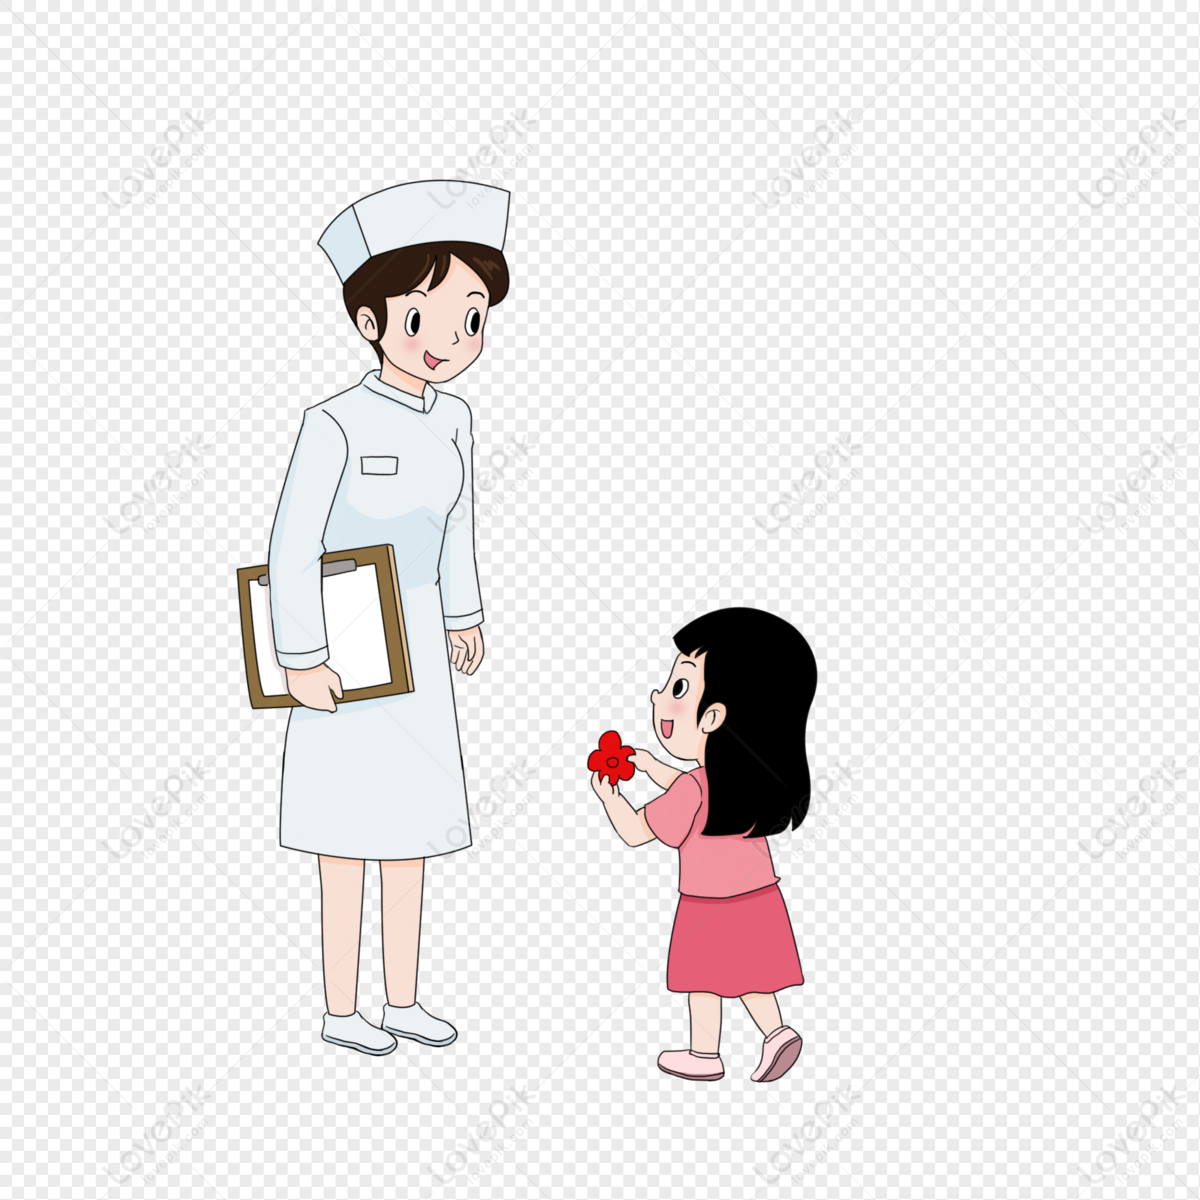 Elementos De Desenho Animado De Dia Das Enfermeiras Para Enferme